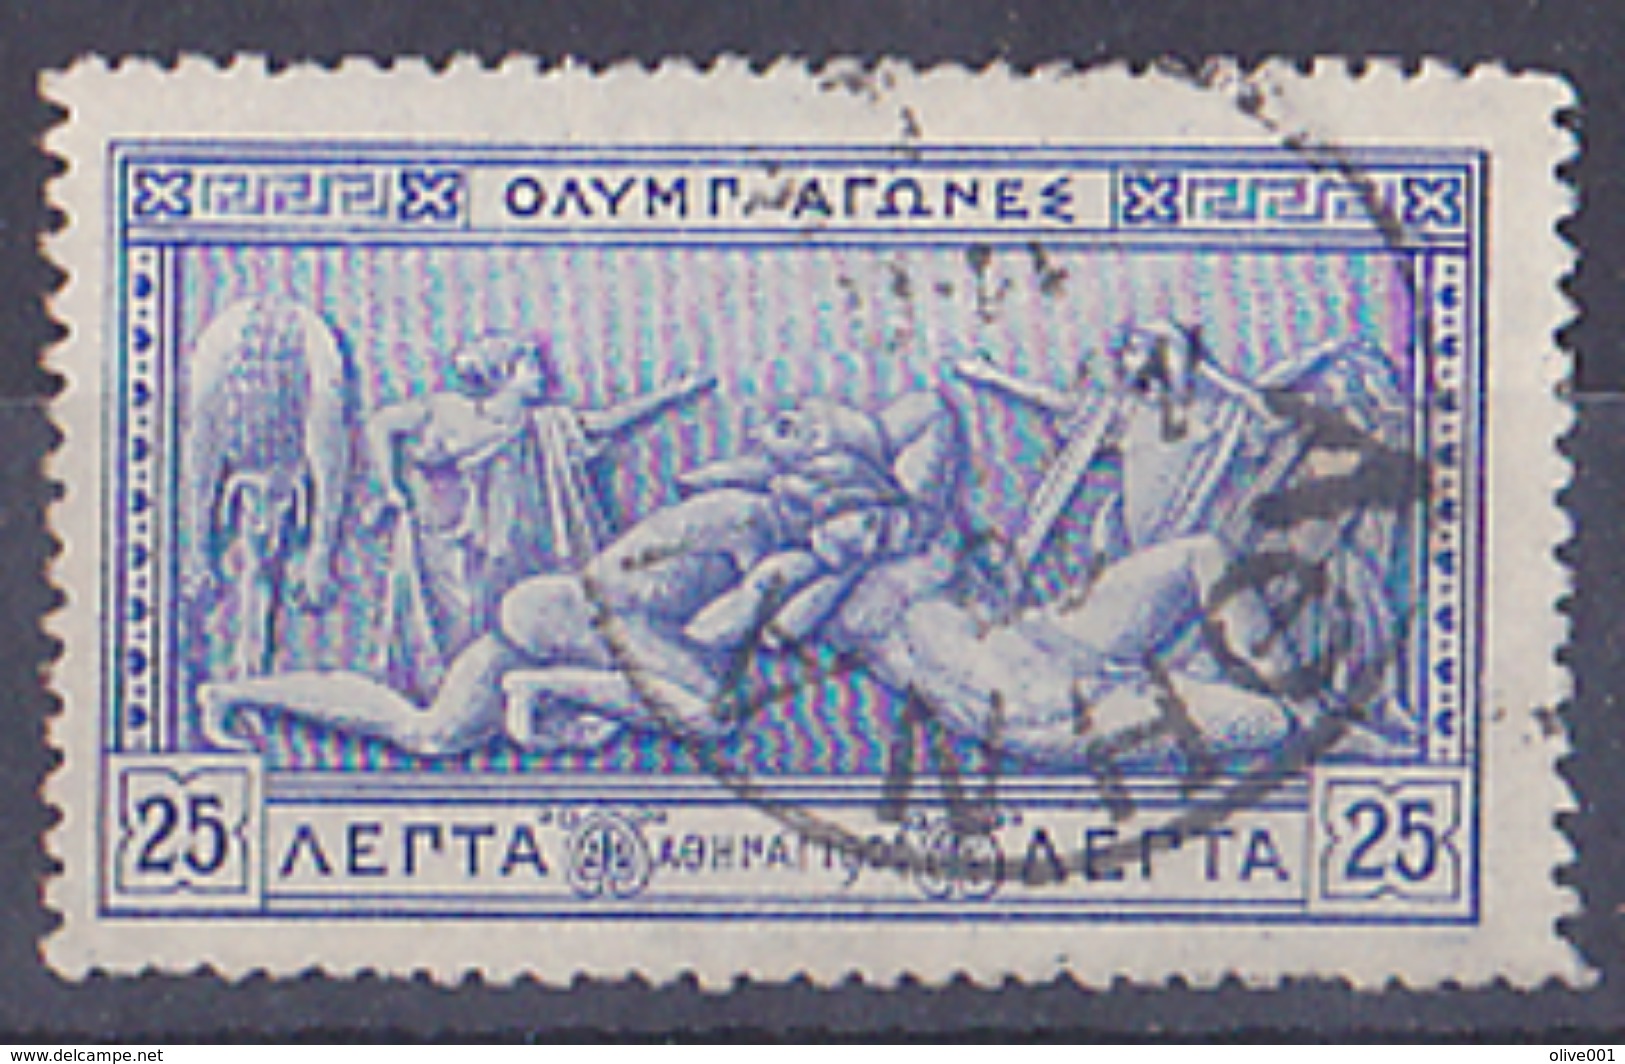 Grèce Athènes 10ème Anniversaire Des 1er Jeux Olympique Moderne 1906 1 Tp Y&T N° 171 Obli Superbe à Avoir Et à Voir - Estate 1896: Atene